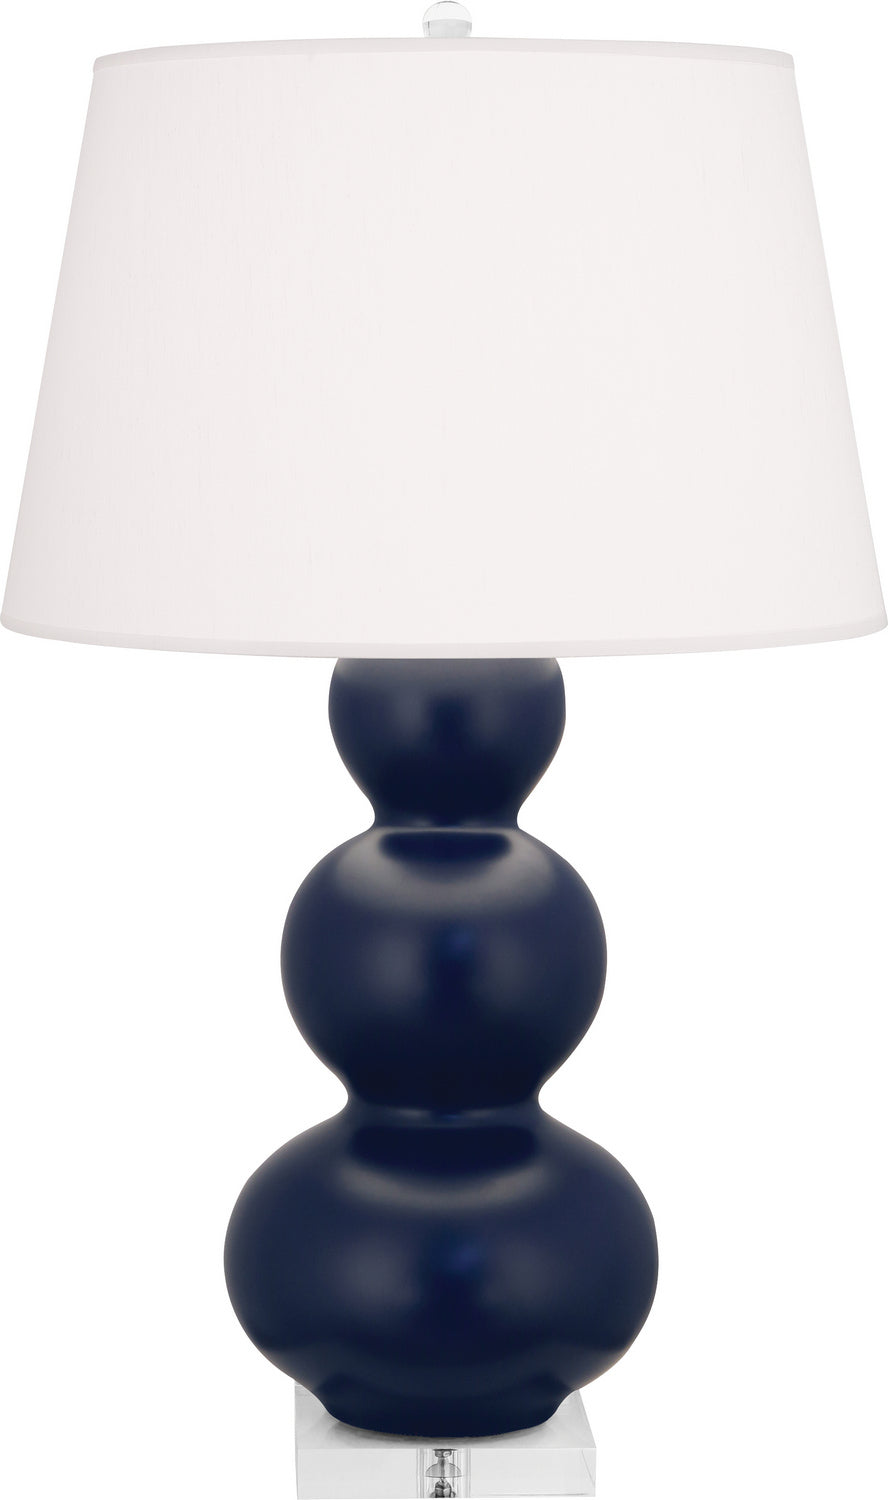 Robert Abbey - One Light Table Lamp - Triple Gourd - Matte Midnight Blue Glazed Ceramic w/Lucite Base- Union Lighting Luminaires Decor